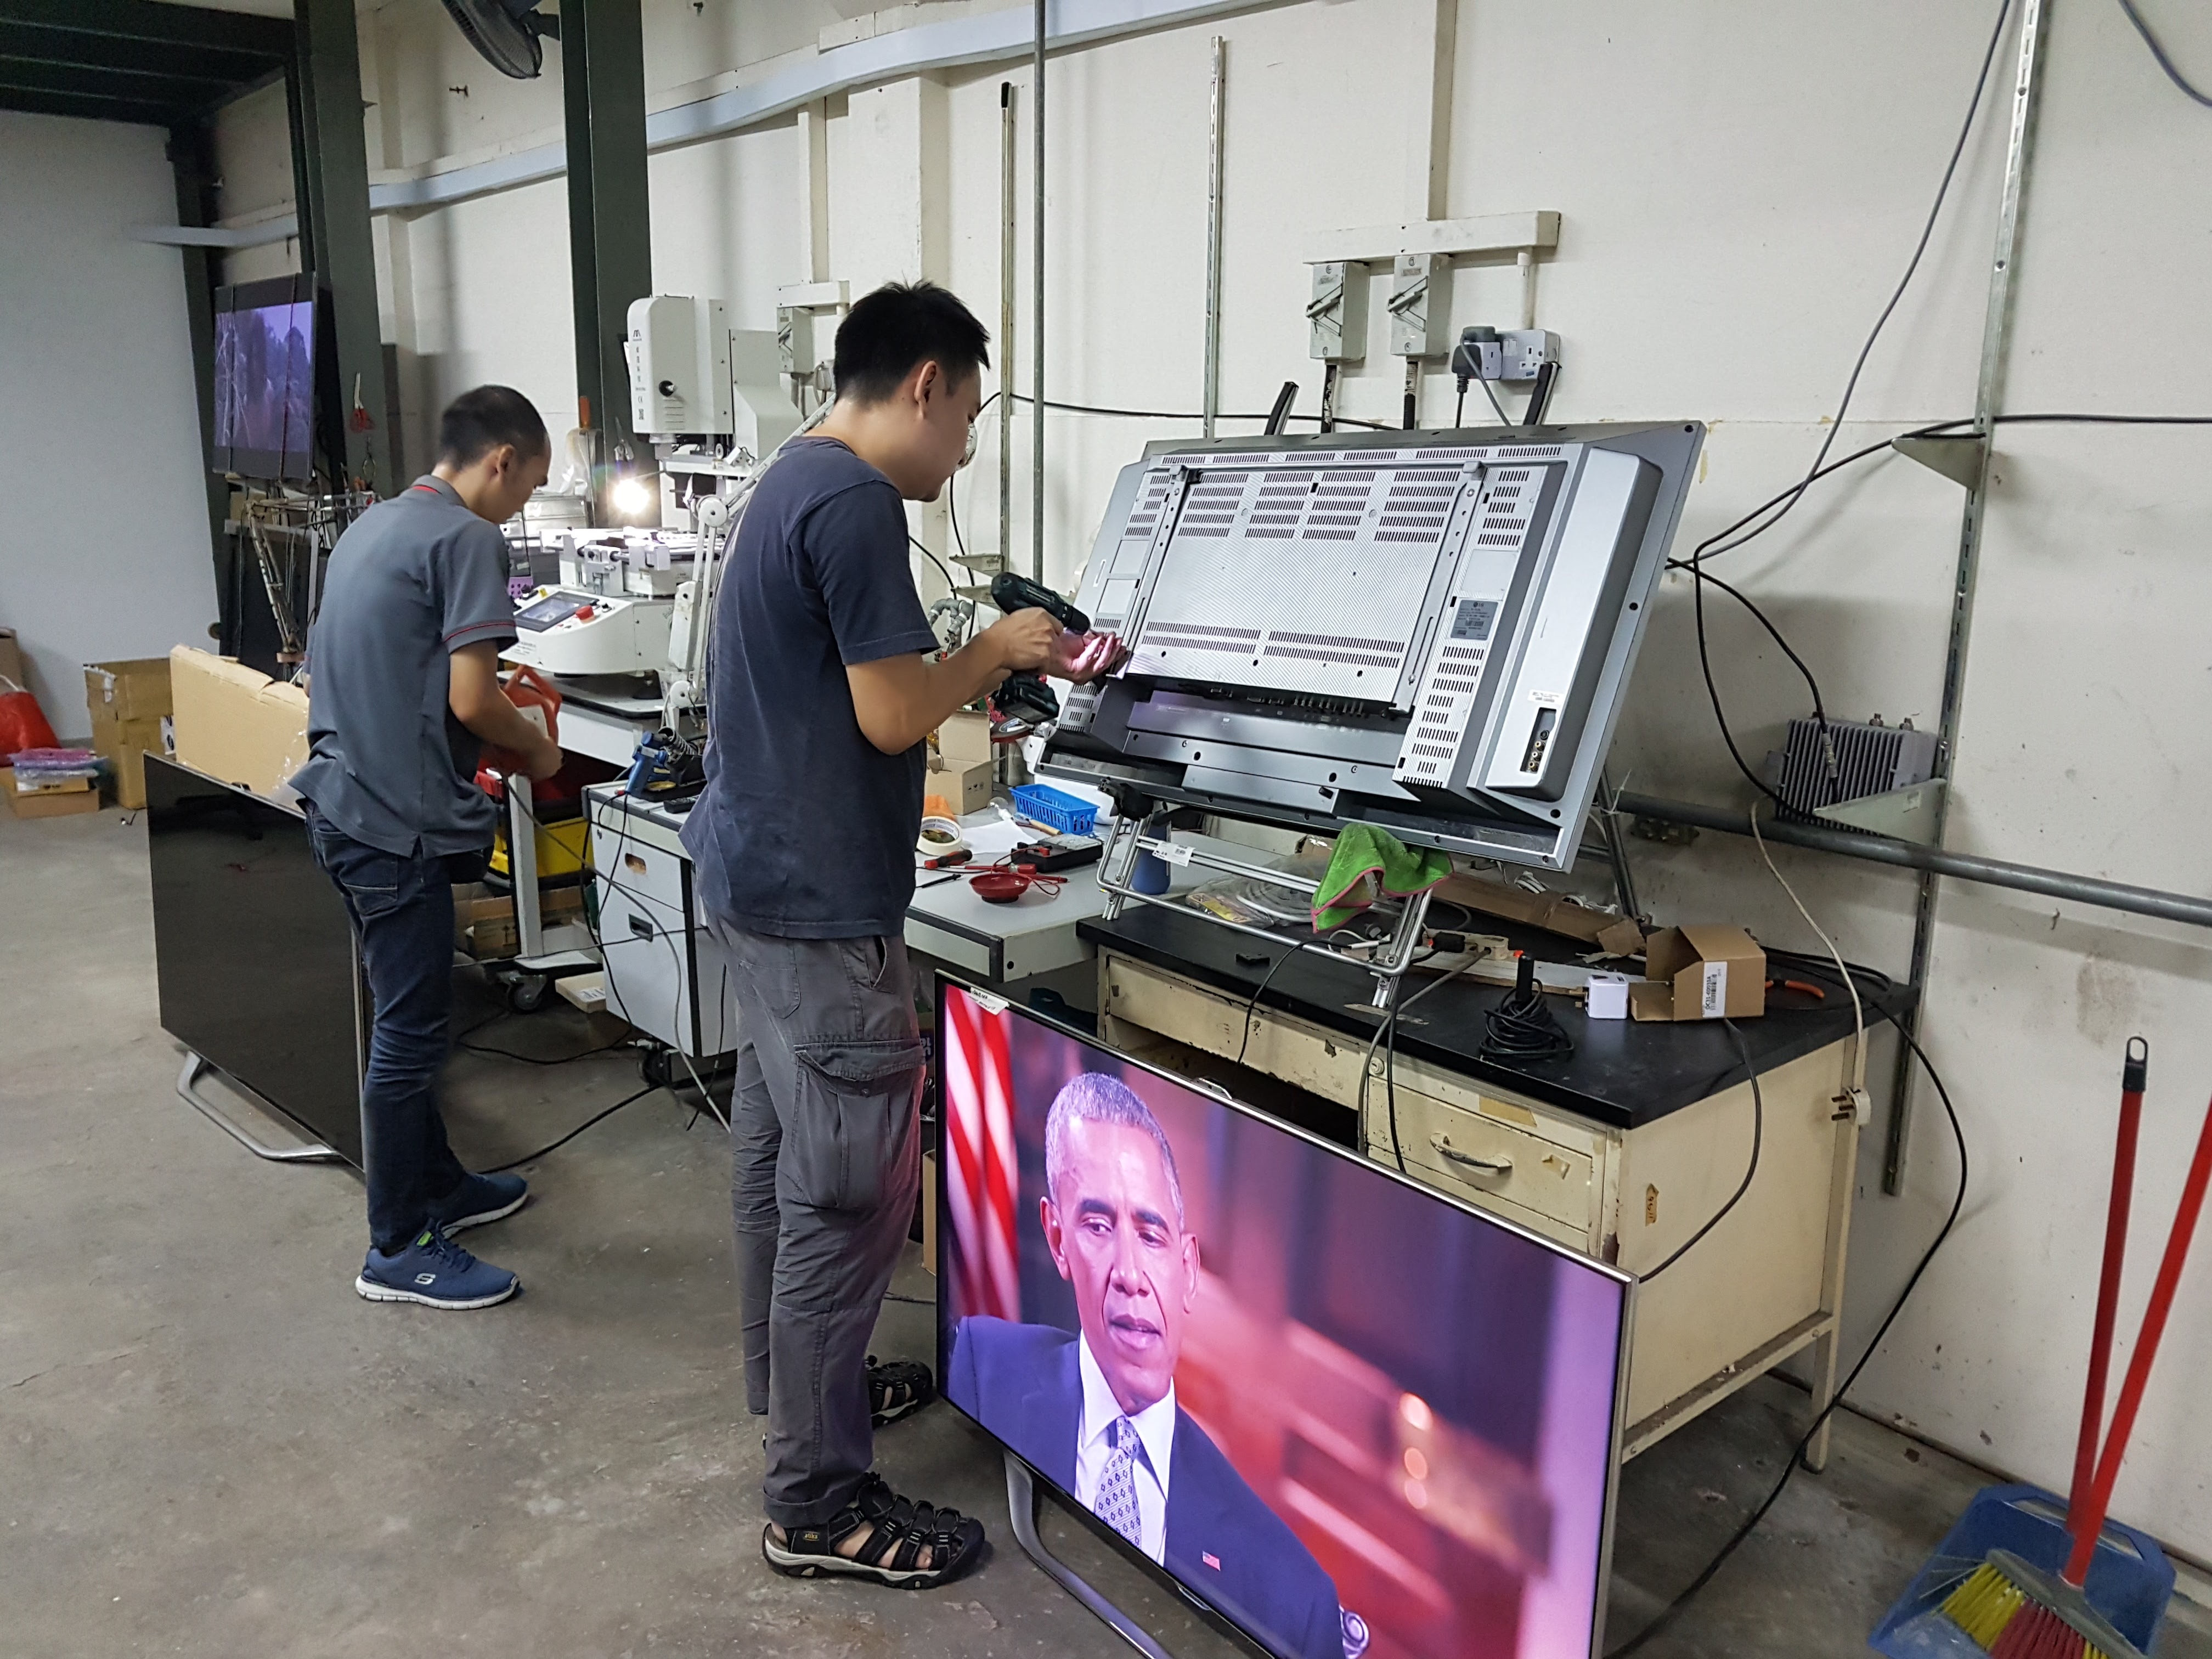 Man repairing TV